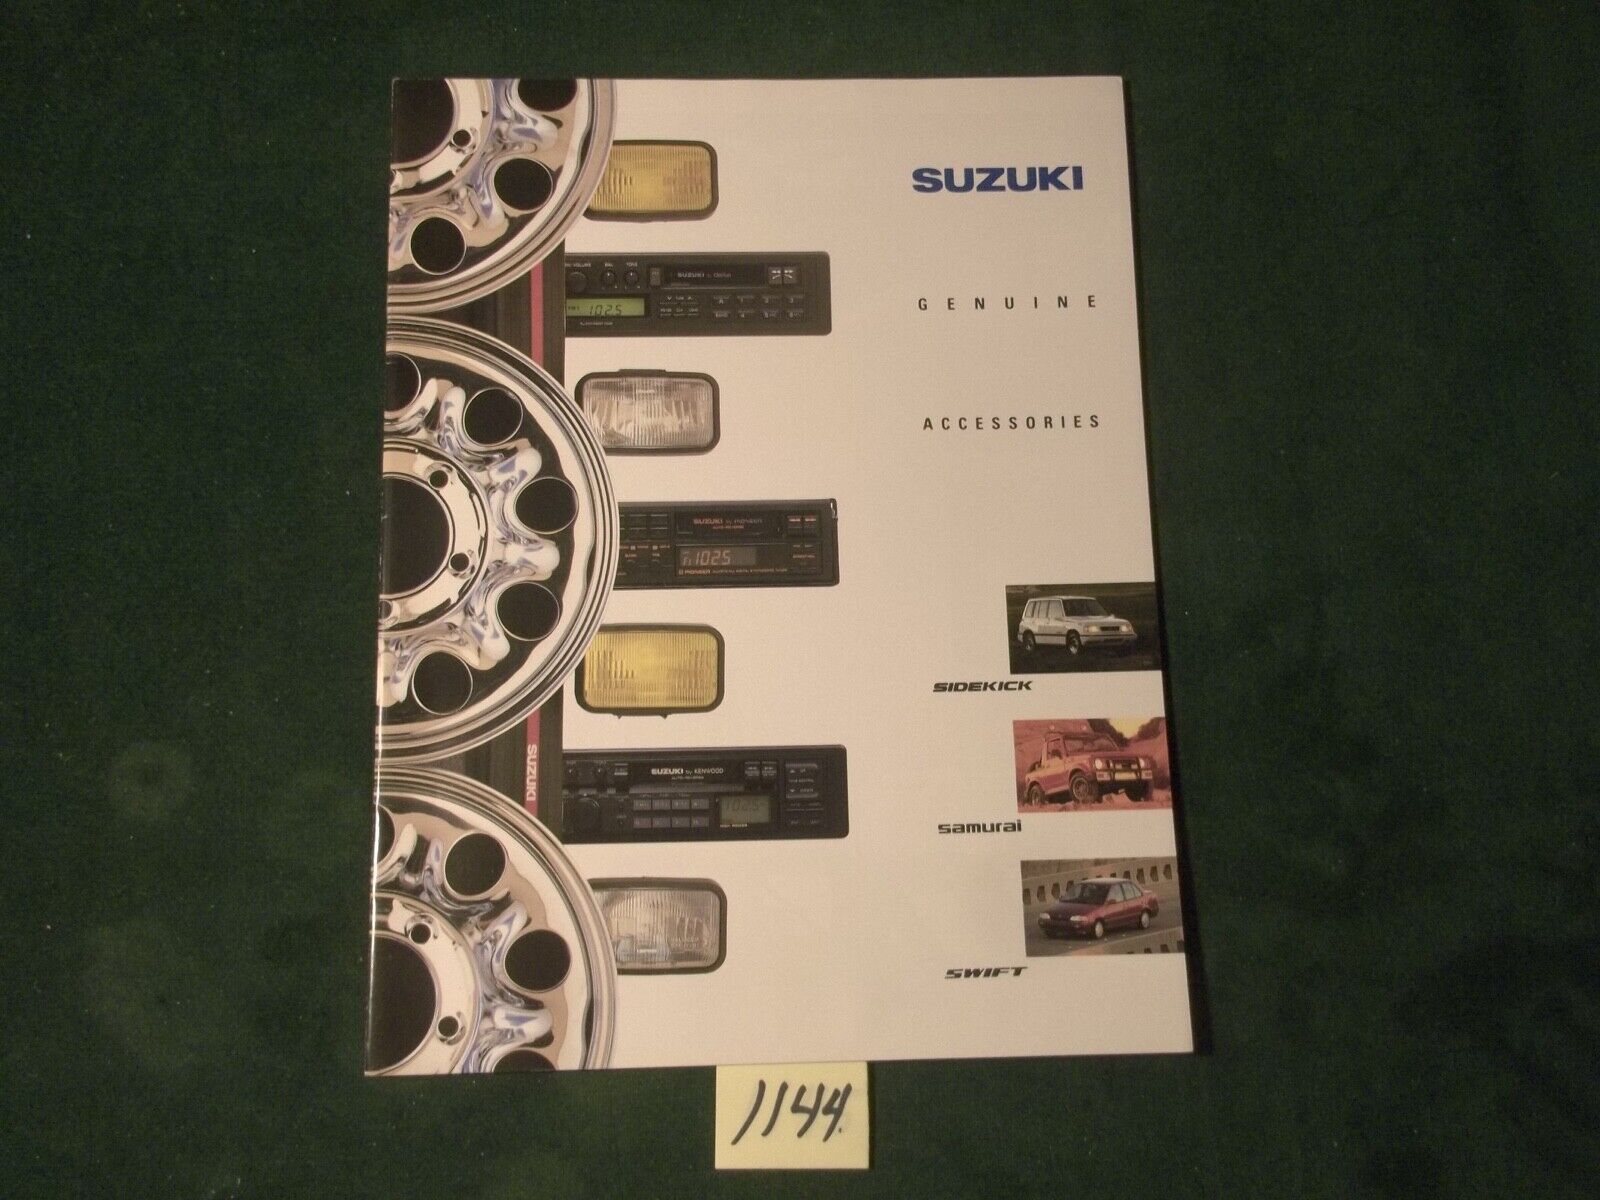 1990-1991 SUZUKI Genuine Accessories Original Dealer Sales Brochure ~  #1144